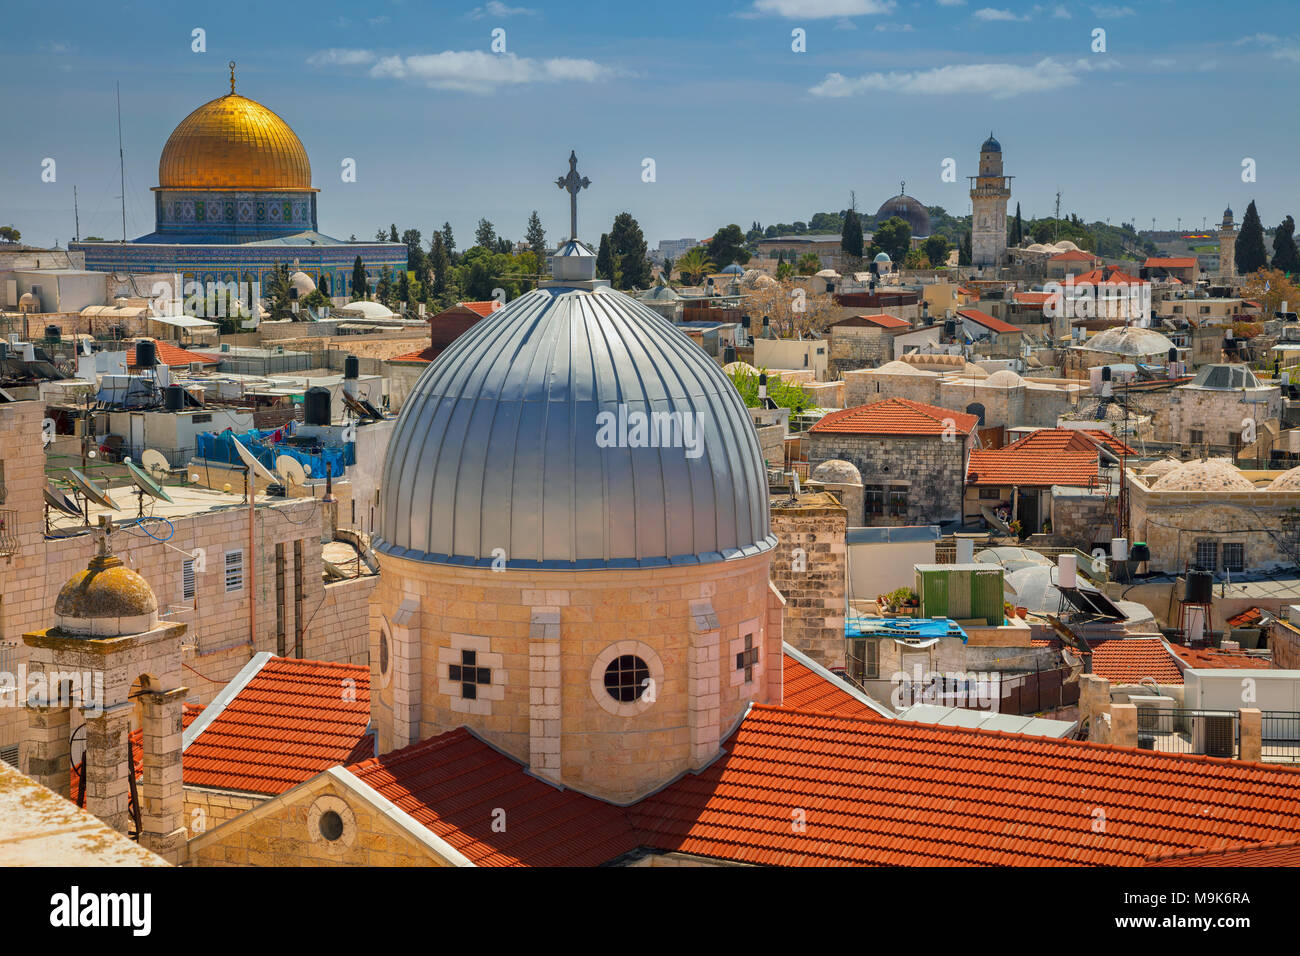 Gerusalemme. Immagine di panorama urbano della città vecchia di Gerusalemme, Israele con la Chiesa di Santa Maria di agonia e la Cupola della roccia. Foto Stock